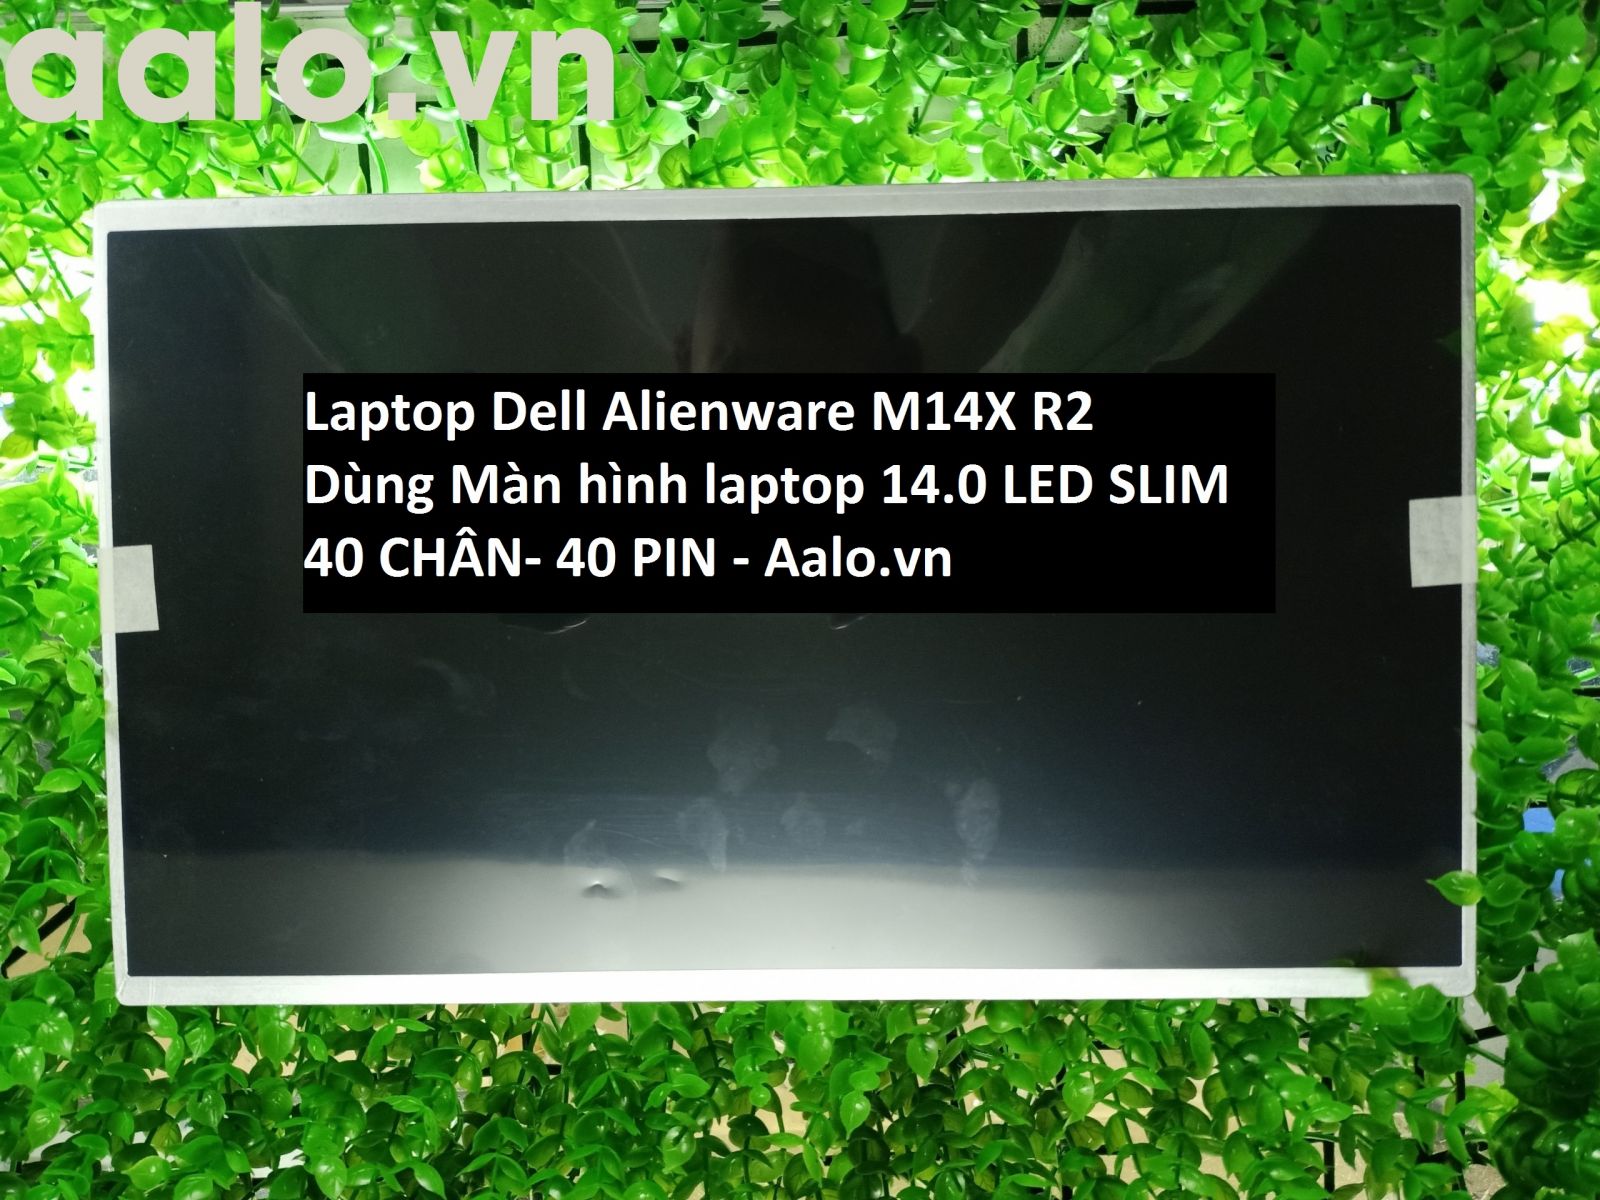 Màn hình Laptop Dell Alienware M14X R2 - Aalo.vn